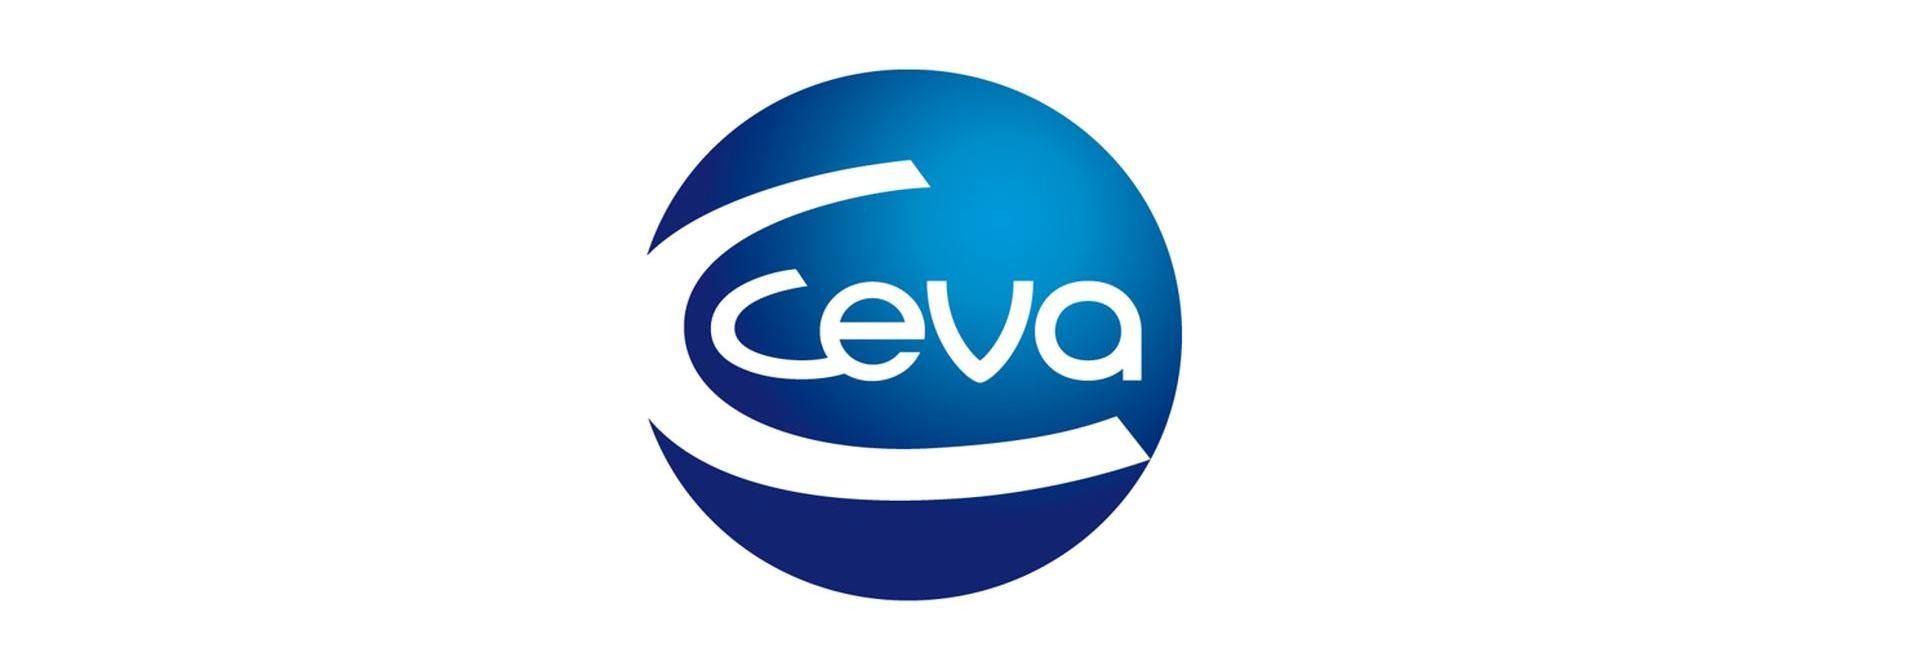 A Ceva Monoron hozza létre az EU legnagyobb kriogén tároló létesítményét - VIDEÓRIPORT